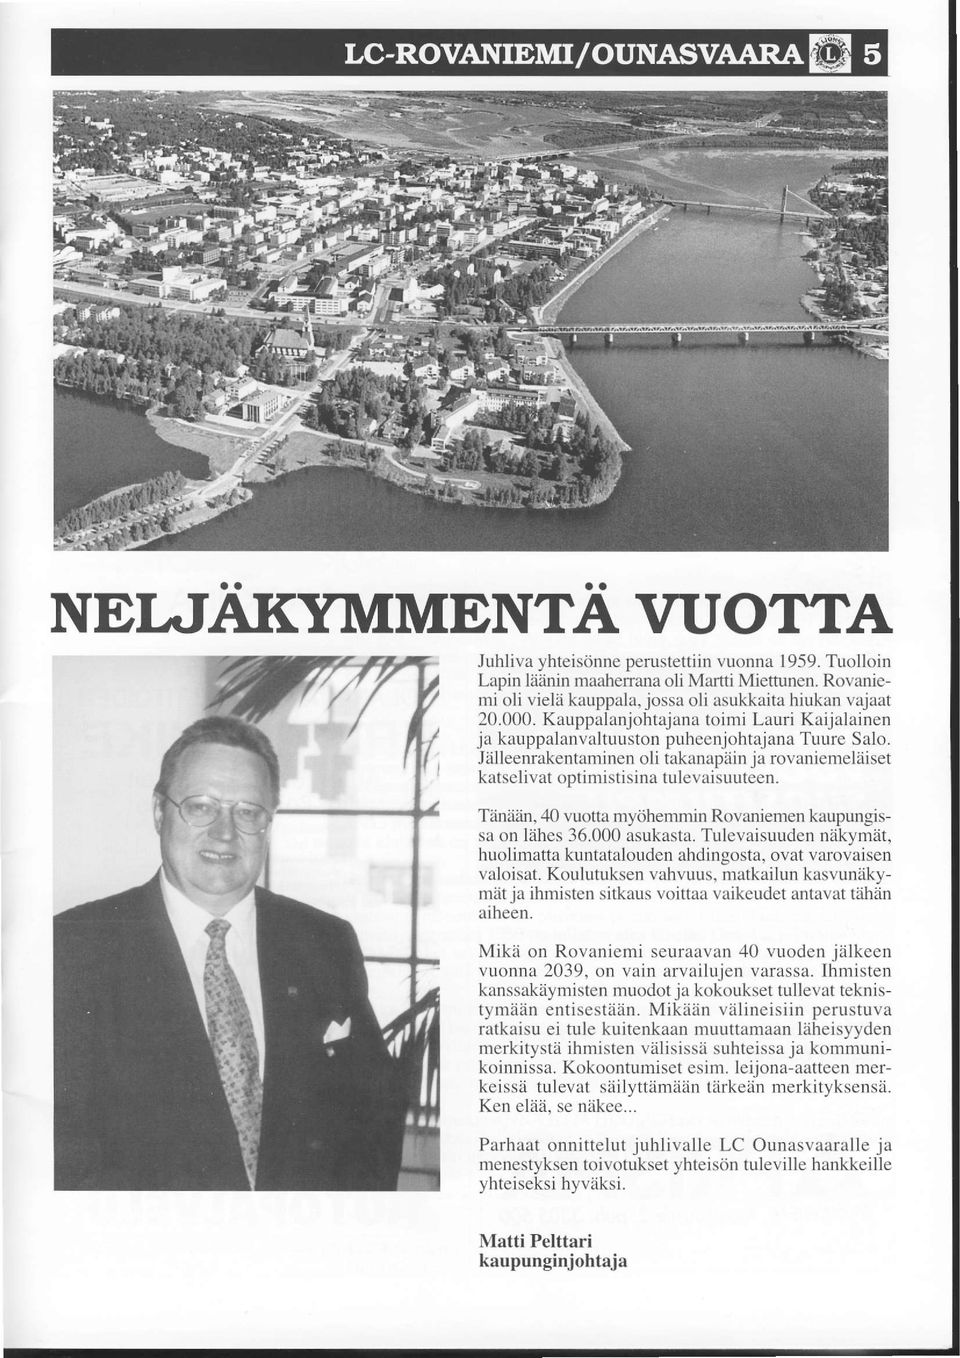 Tiiniiiin, 40 vuotta mydhemmin Rovaniemen kaupungissa on Iiihes 36.000 asukasta. Tuievaisuudeniikymit, huolimatta kuntatxlouden ahdinsosta. ovat varovaisen valoisat. Koulutuksen vahvuus.